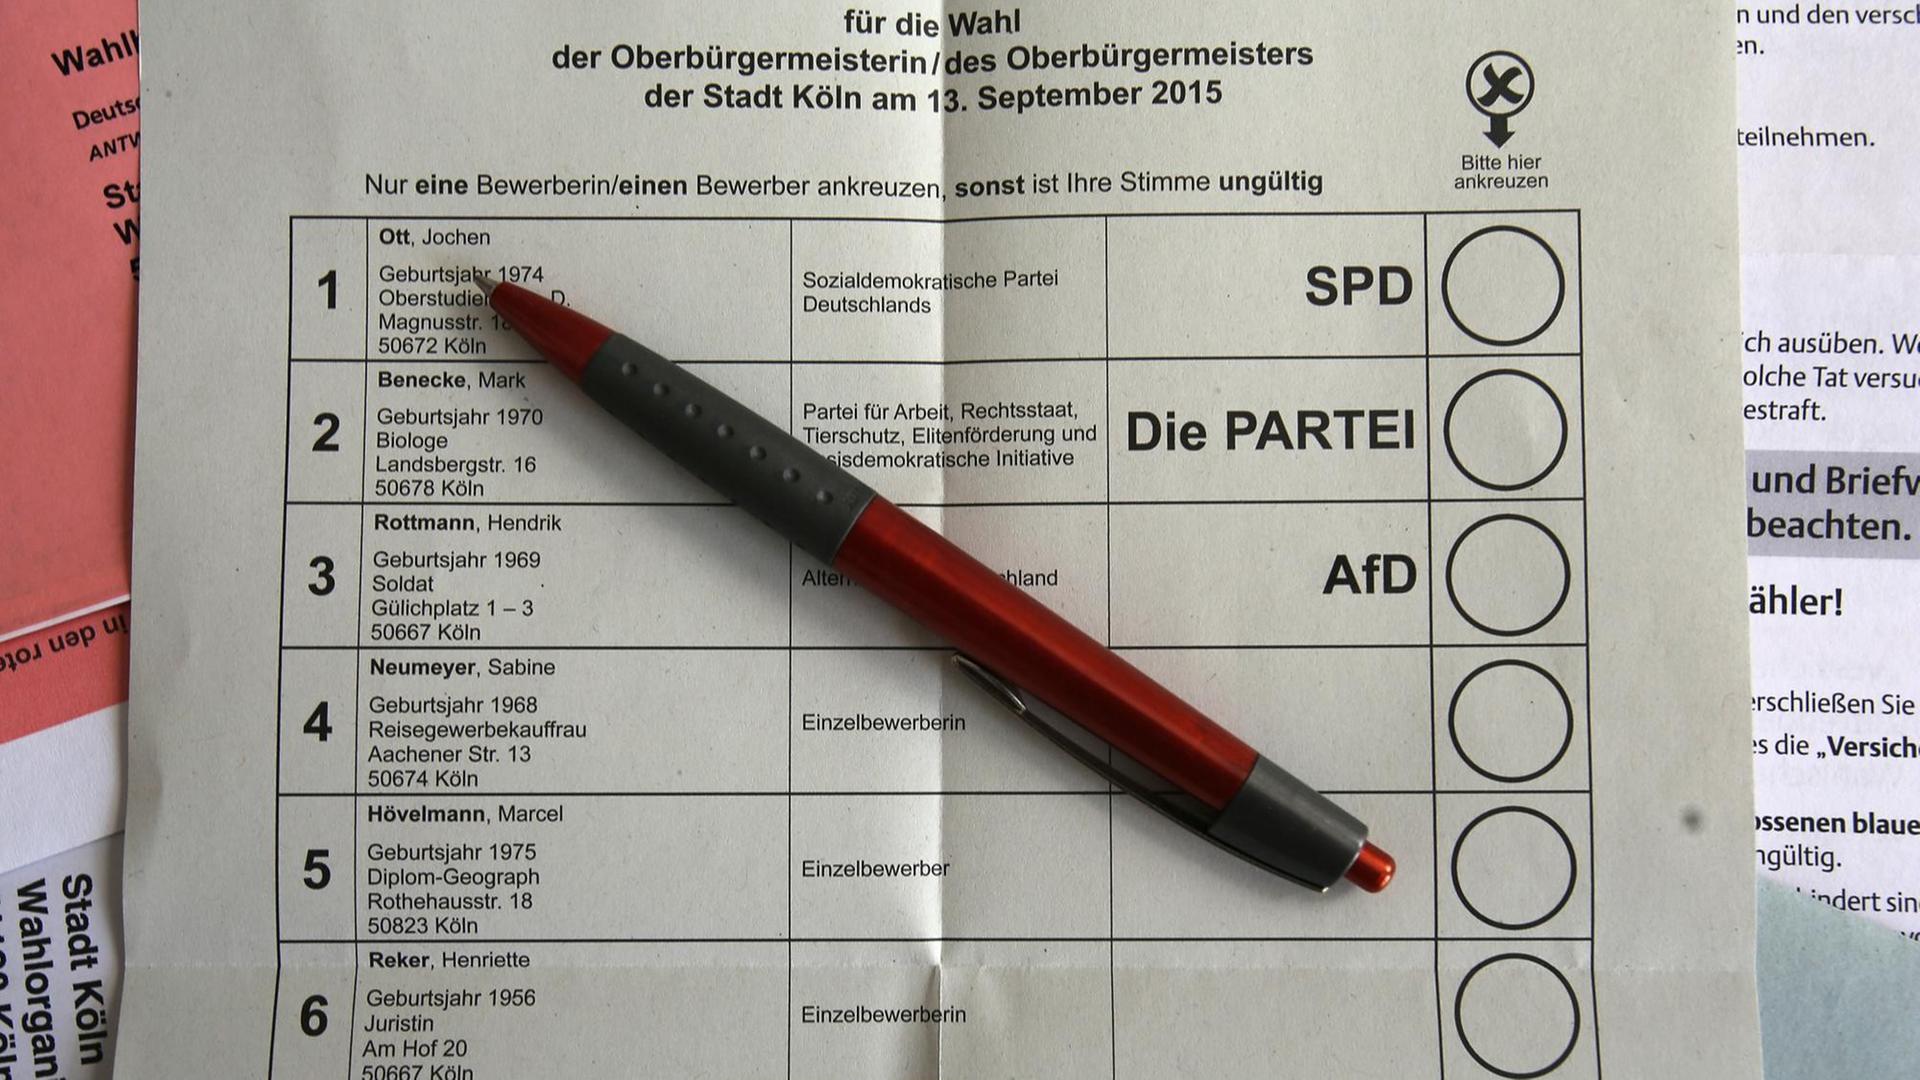 Ein Exemplar des Stimmzettels zur Oberbürgermeisterwahl in Köln am 13.09.2015.